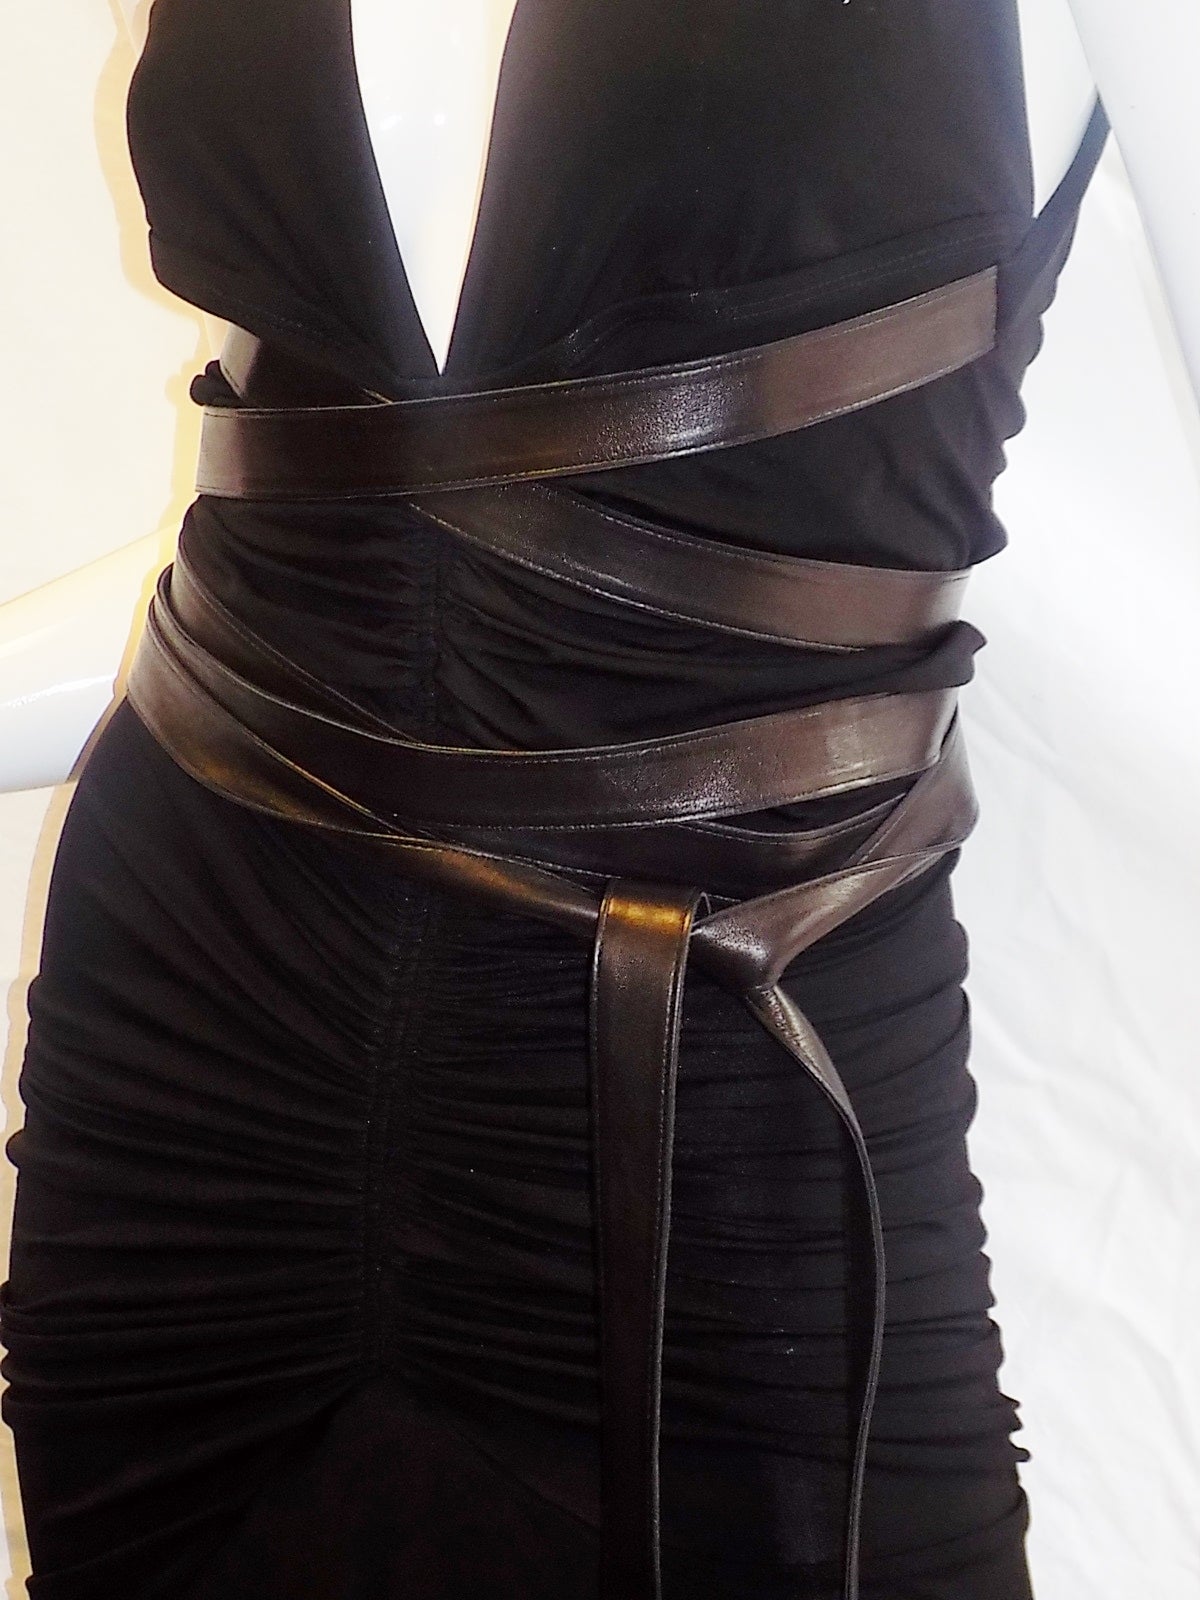 Women's Donna Karan Vintage halter  black cocktail dress with leather long wrap belts